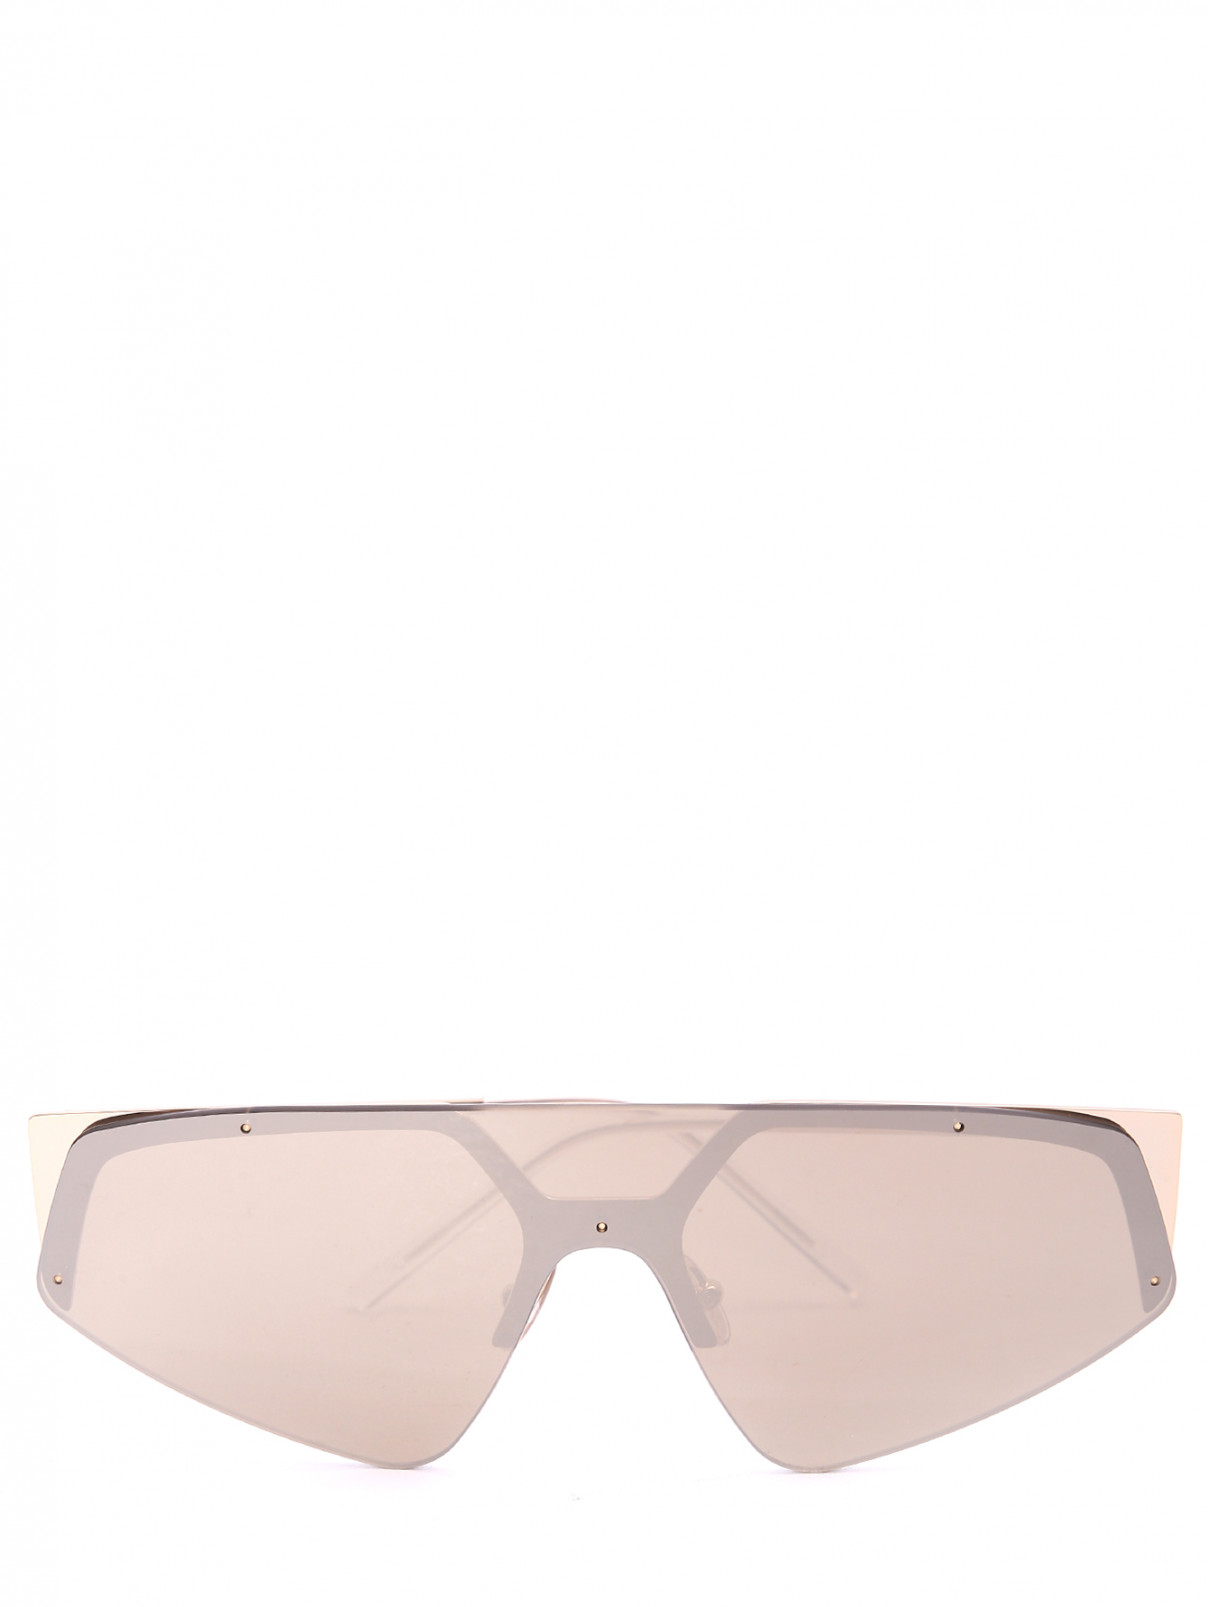 Очки солнцезащитные из пластика и металла Max Mara  –  Общий вид  – Цвет:  Металлик